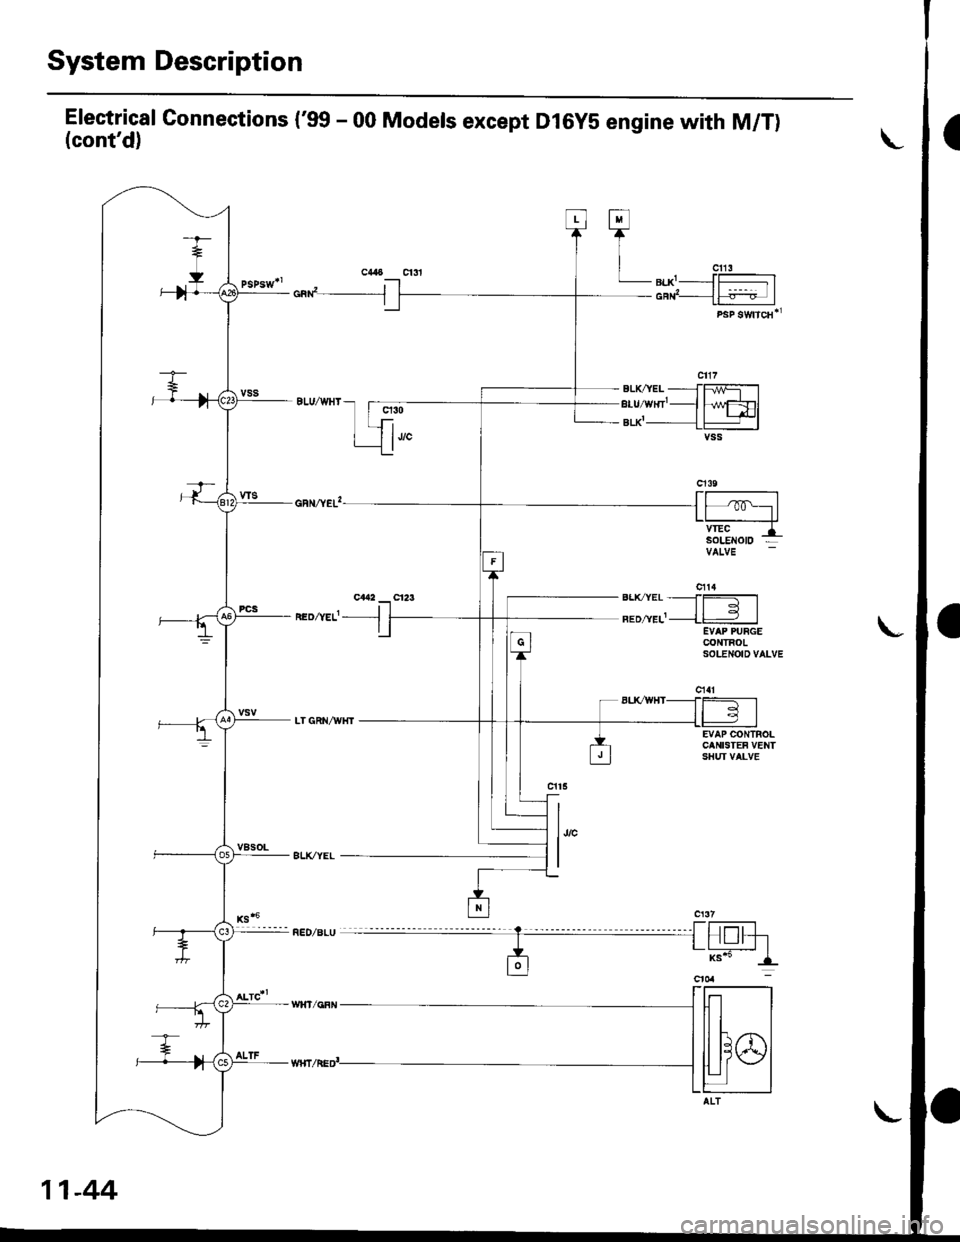 HONDA CIVIC 1997 6.G Owners Manual System Description
Electrical Gonnections (99 - 00 Models except Dl6yS engine with M/T)(contd)
cad__J
neozvef- -l
q30
1""
h/wFDlt+l-lvss
EVAP CONTROLCANISTEF VENTSHUI VALVE
l,,"
I
Fl
TI
| "u,LB|.X-